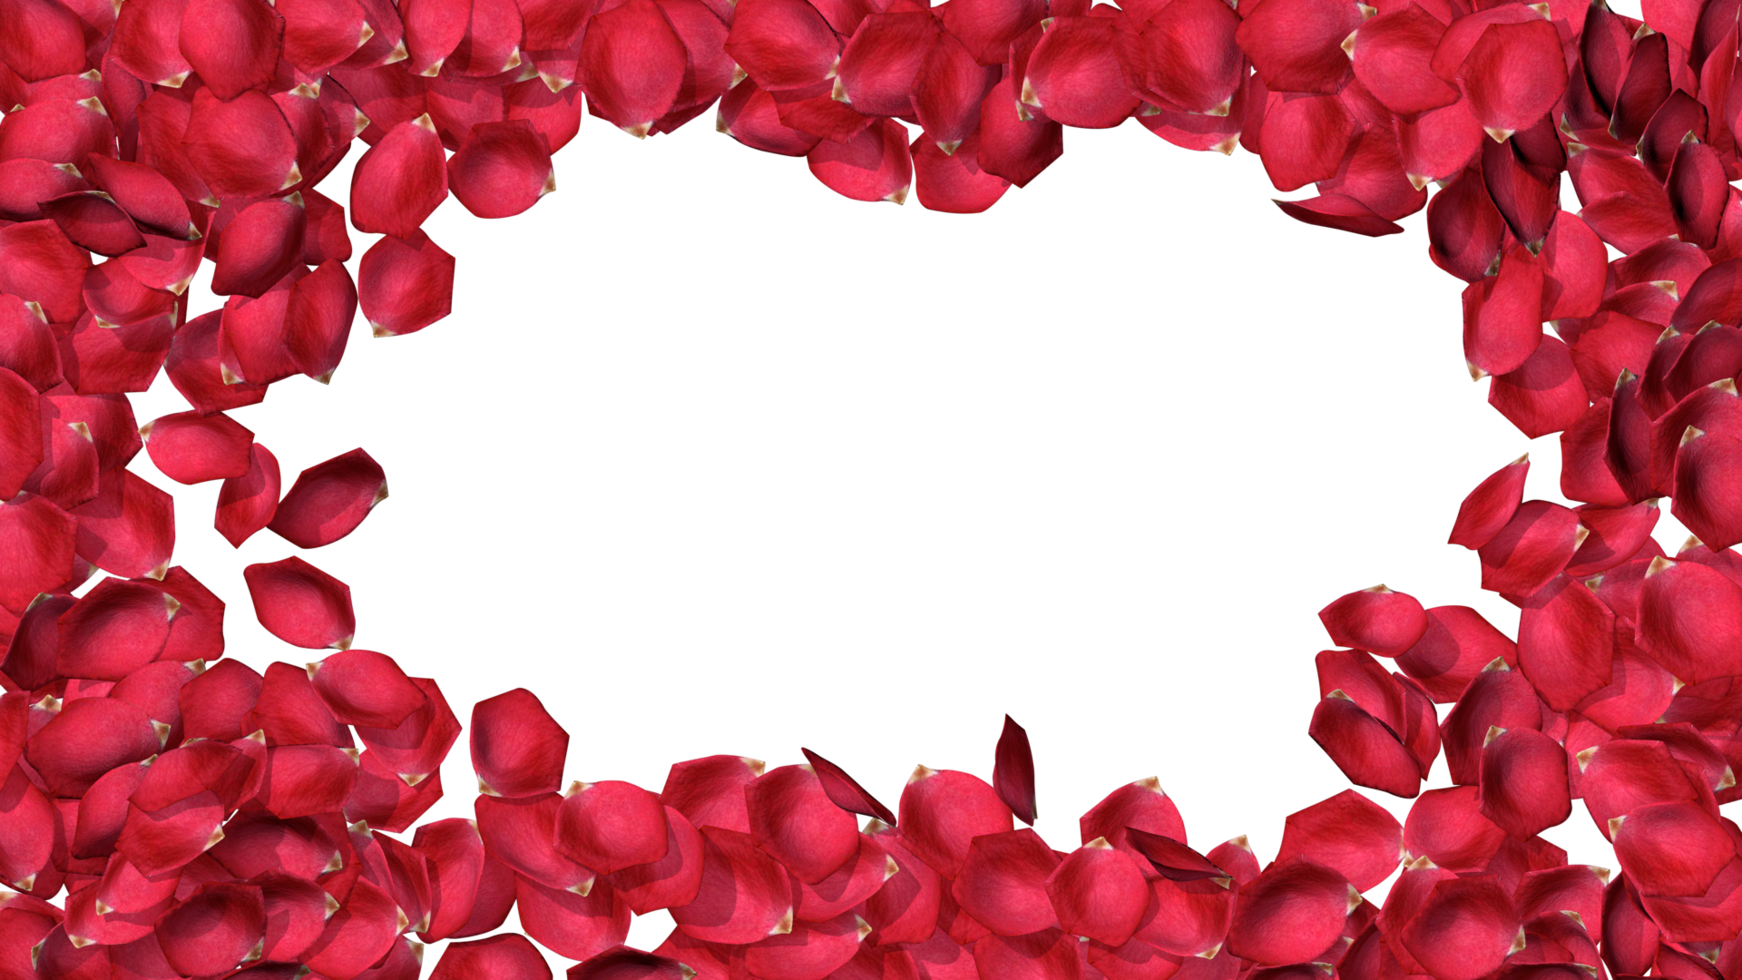 Thêm chút nét trang trí vào hình ảnh Valentine của bạn với những viền hình trái tim cánh hoa hồng tuyệt đẹp. Tất cả miễn phí chỉ cần cập nhật thường xuyên để không bỏ lỡ những bức ảnh đẹp nhất.